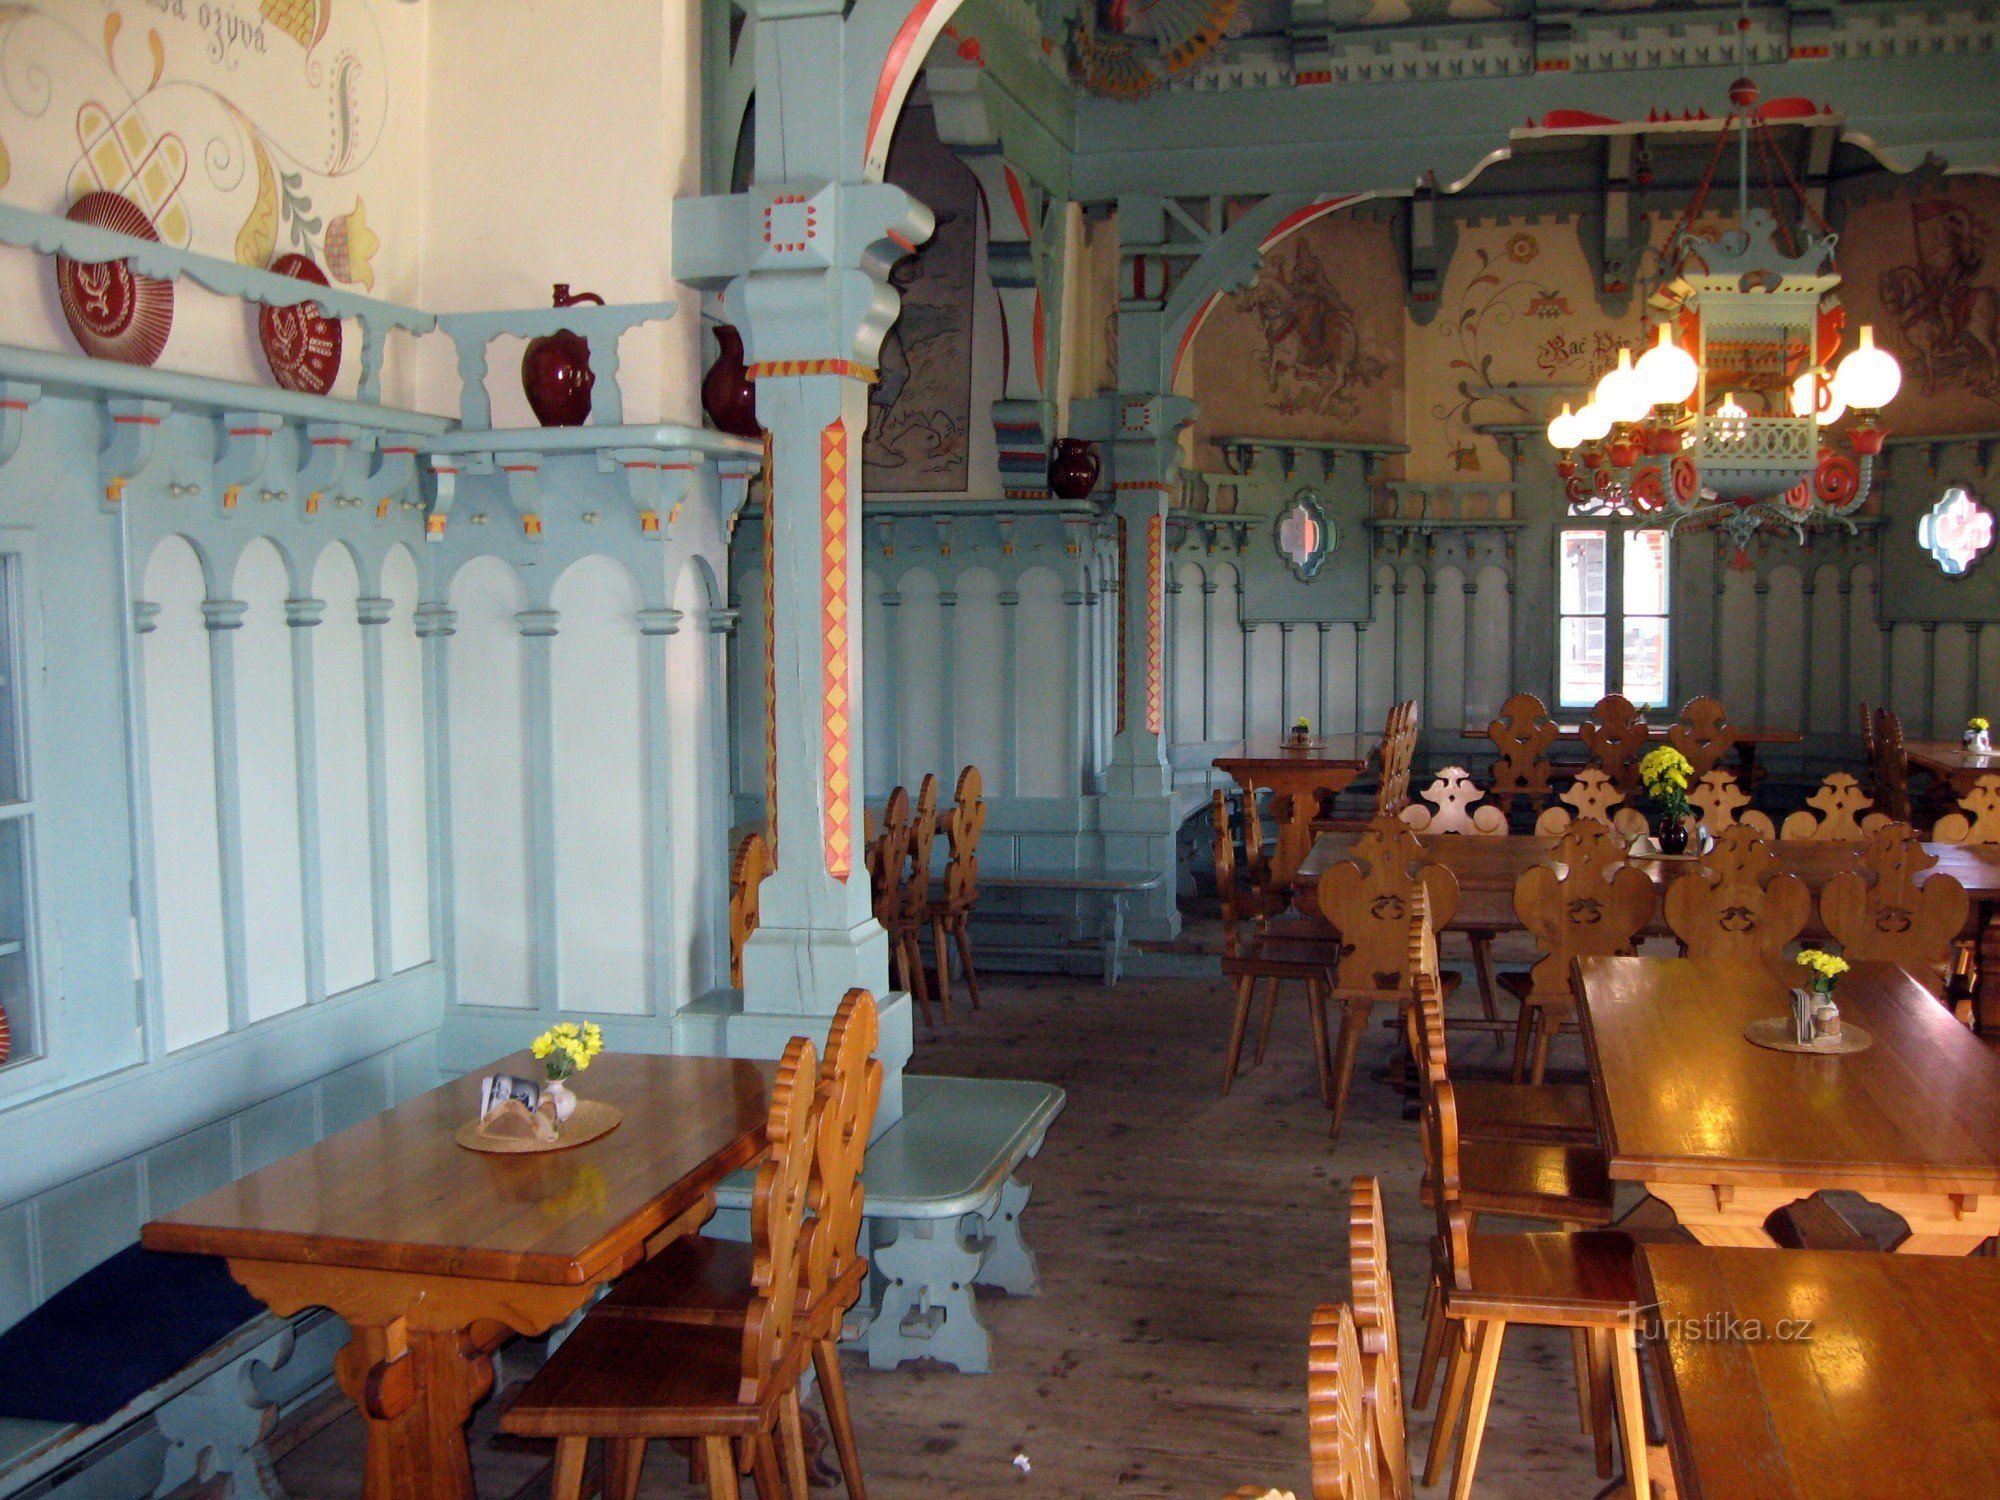 Restaurant inside